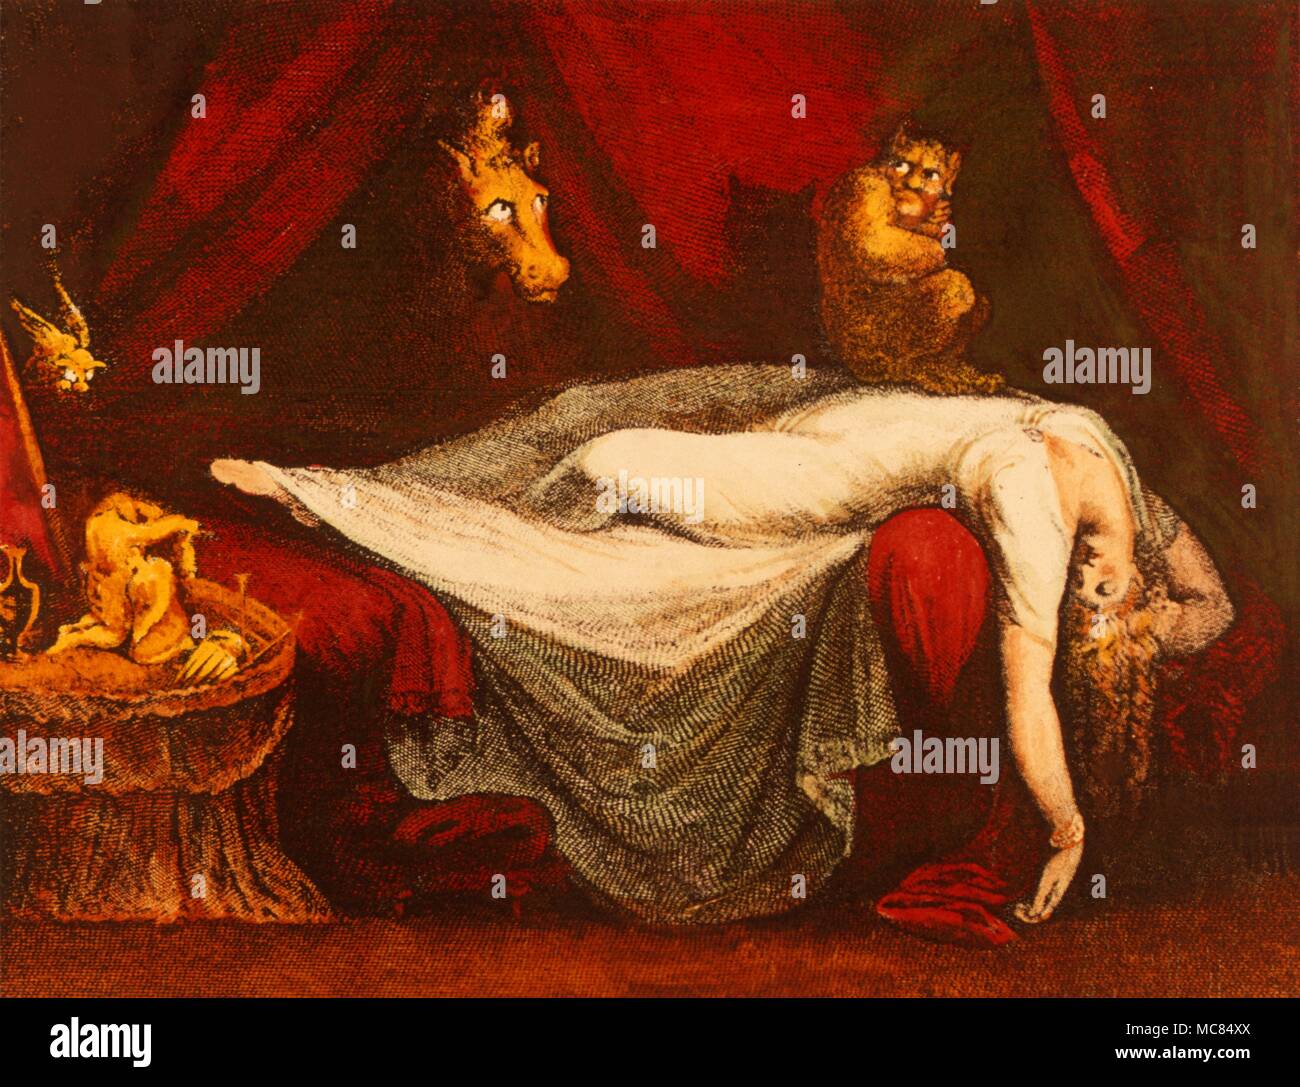 Incubus sitzt ont er Körper einer schlafenden Frau. Minderwertig Drucken von ca. 1828 von William Raddon, Fuseli Malerei inspiriert, "Der Alptraum". Stockfoto